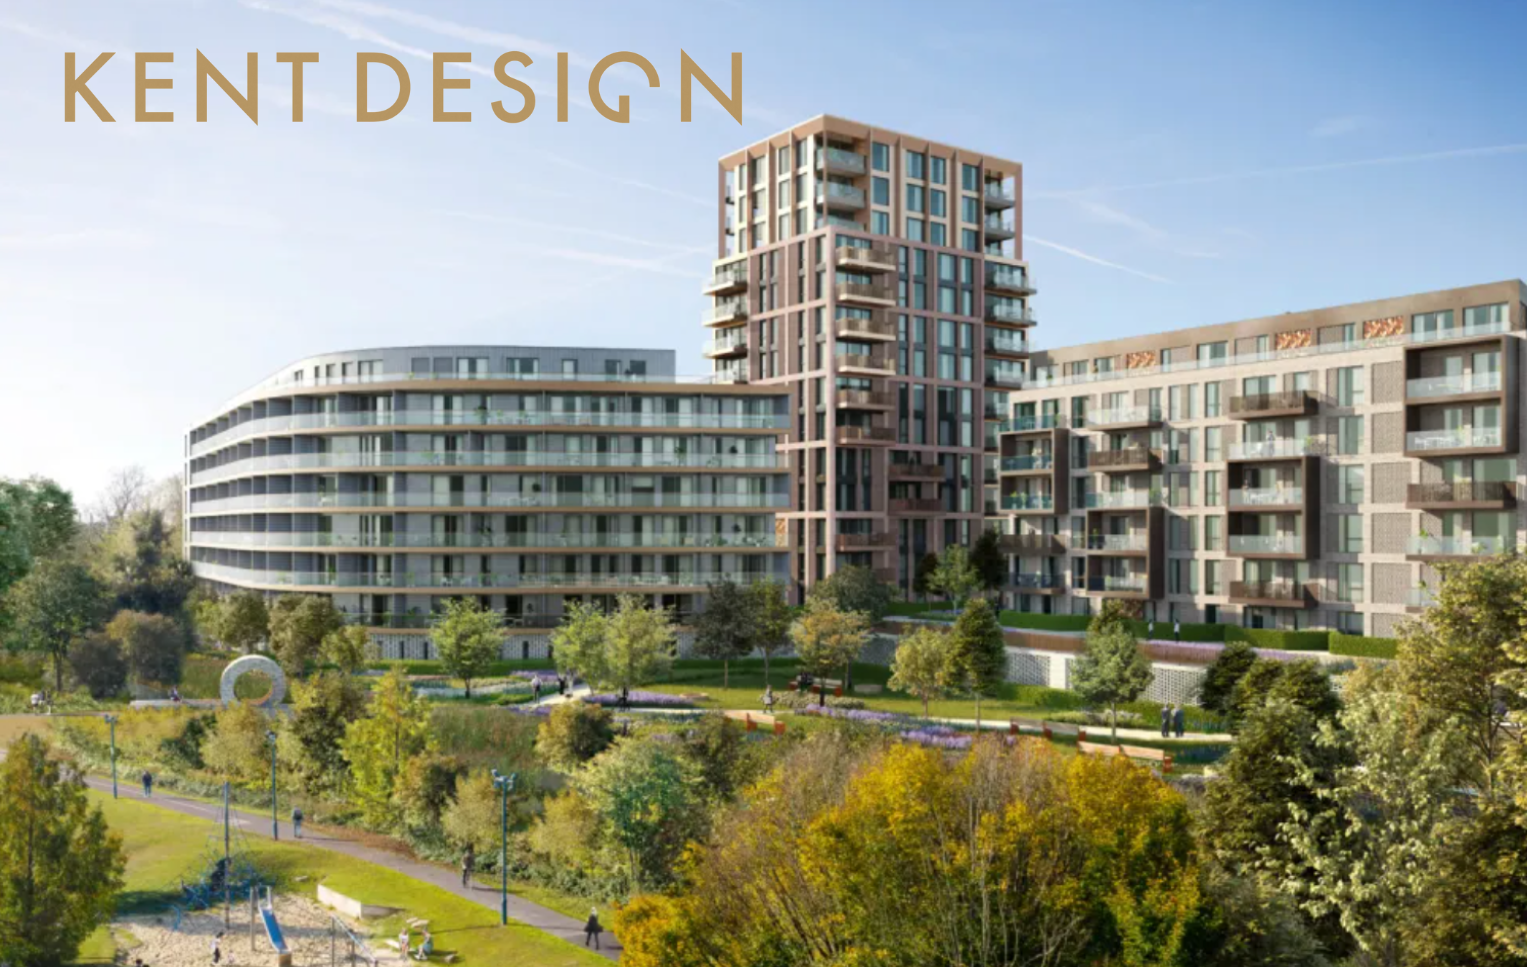 Design South East — Kent Design: Knowledge Exchange: Town Centre Developments Showcase